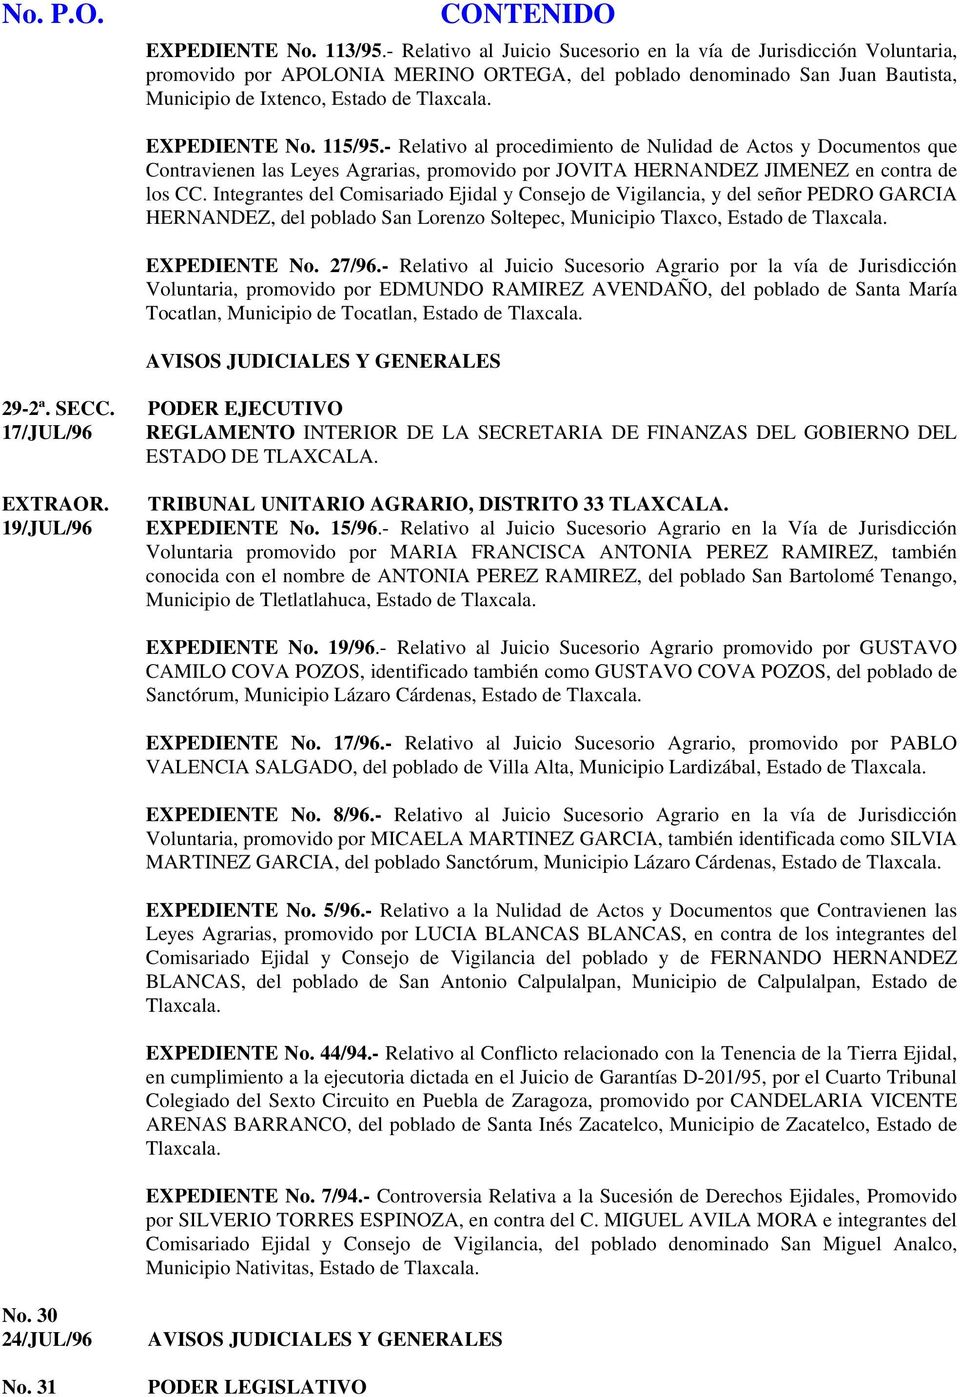 EXPEDIENTE No. 115/95.- Relativo al procedimiento de Nulidad de Actos y Documentos que Contravienen las Leyes Agrarias, promovido por JOVITA HERNANDEZ JIMENEZ en contra de los CC.